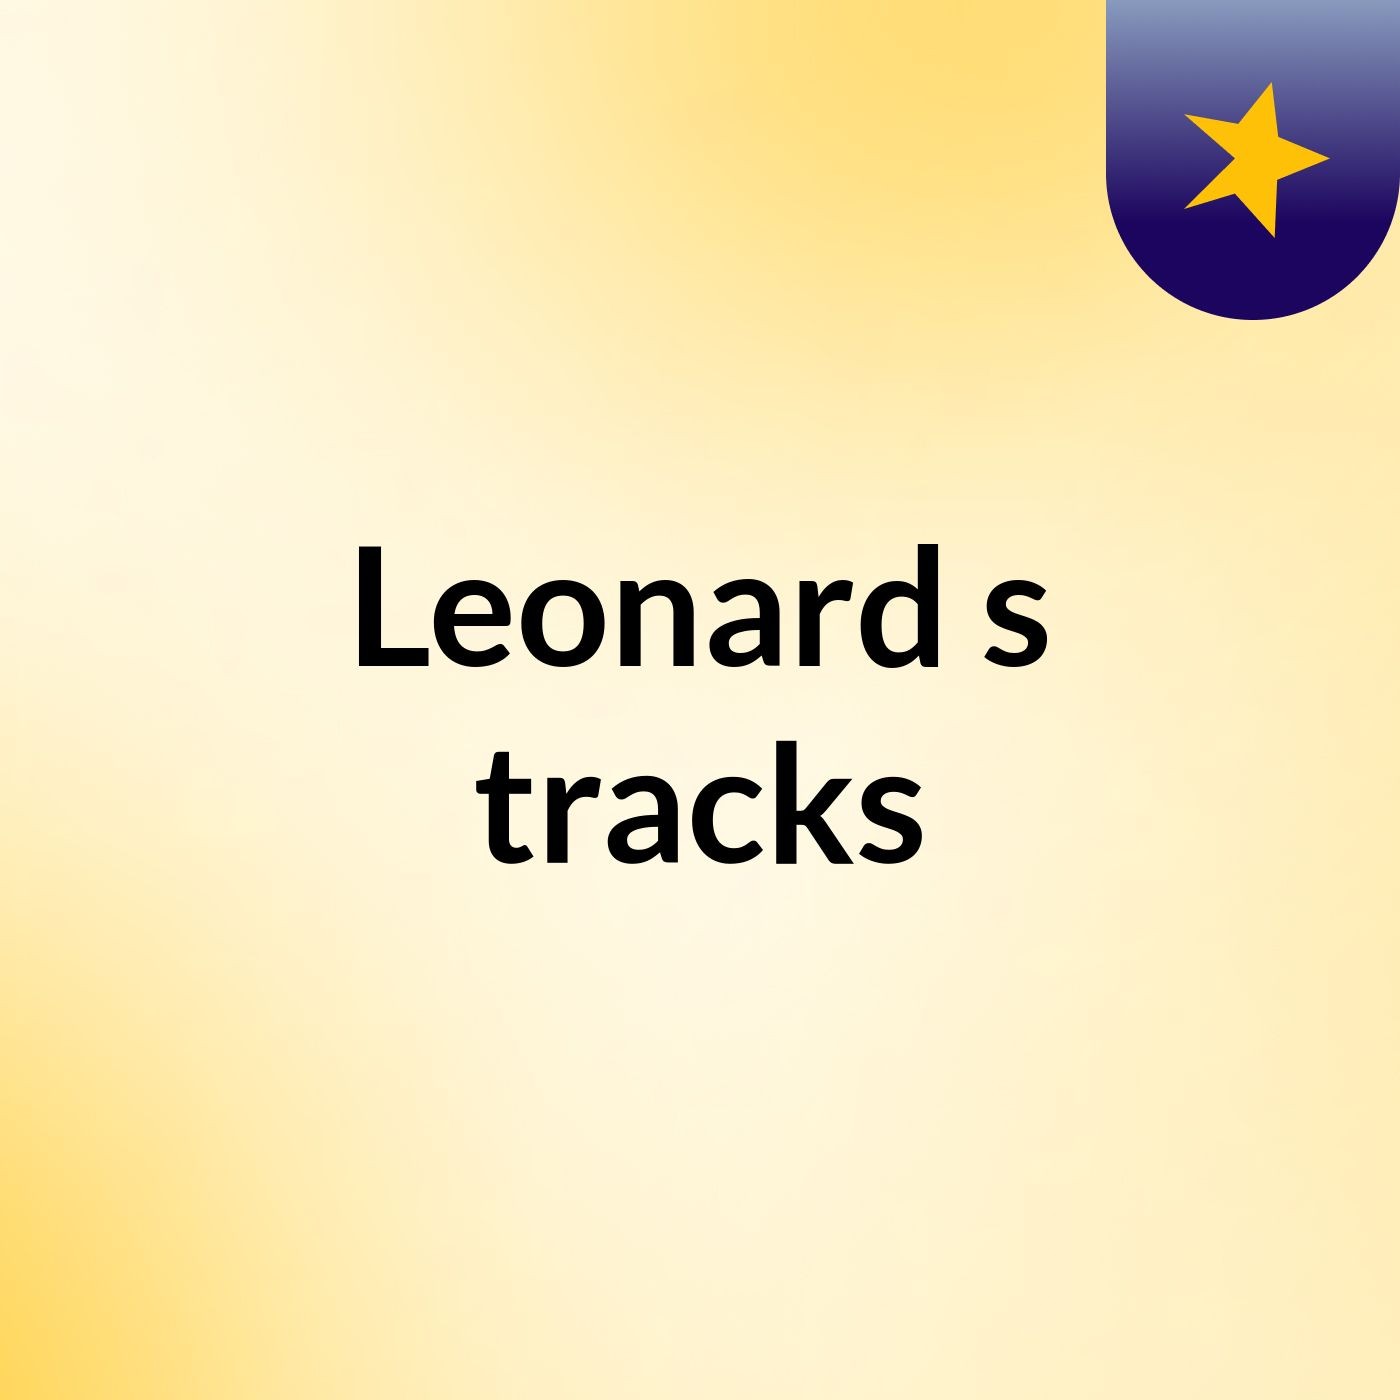 Leonard's tracks